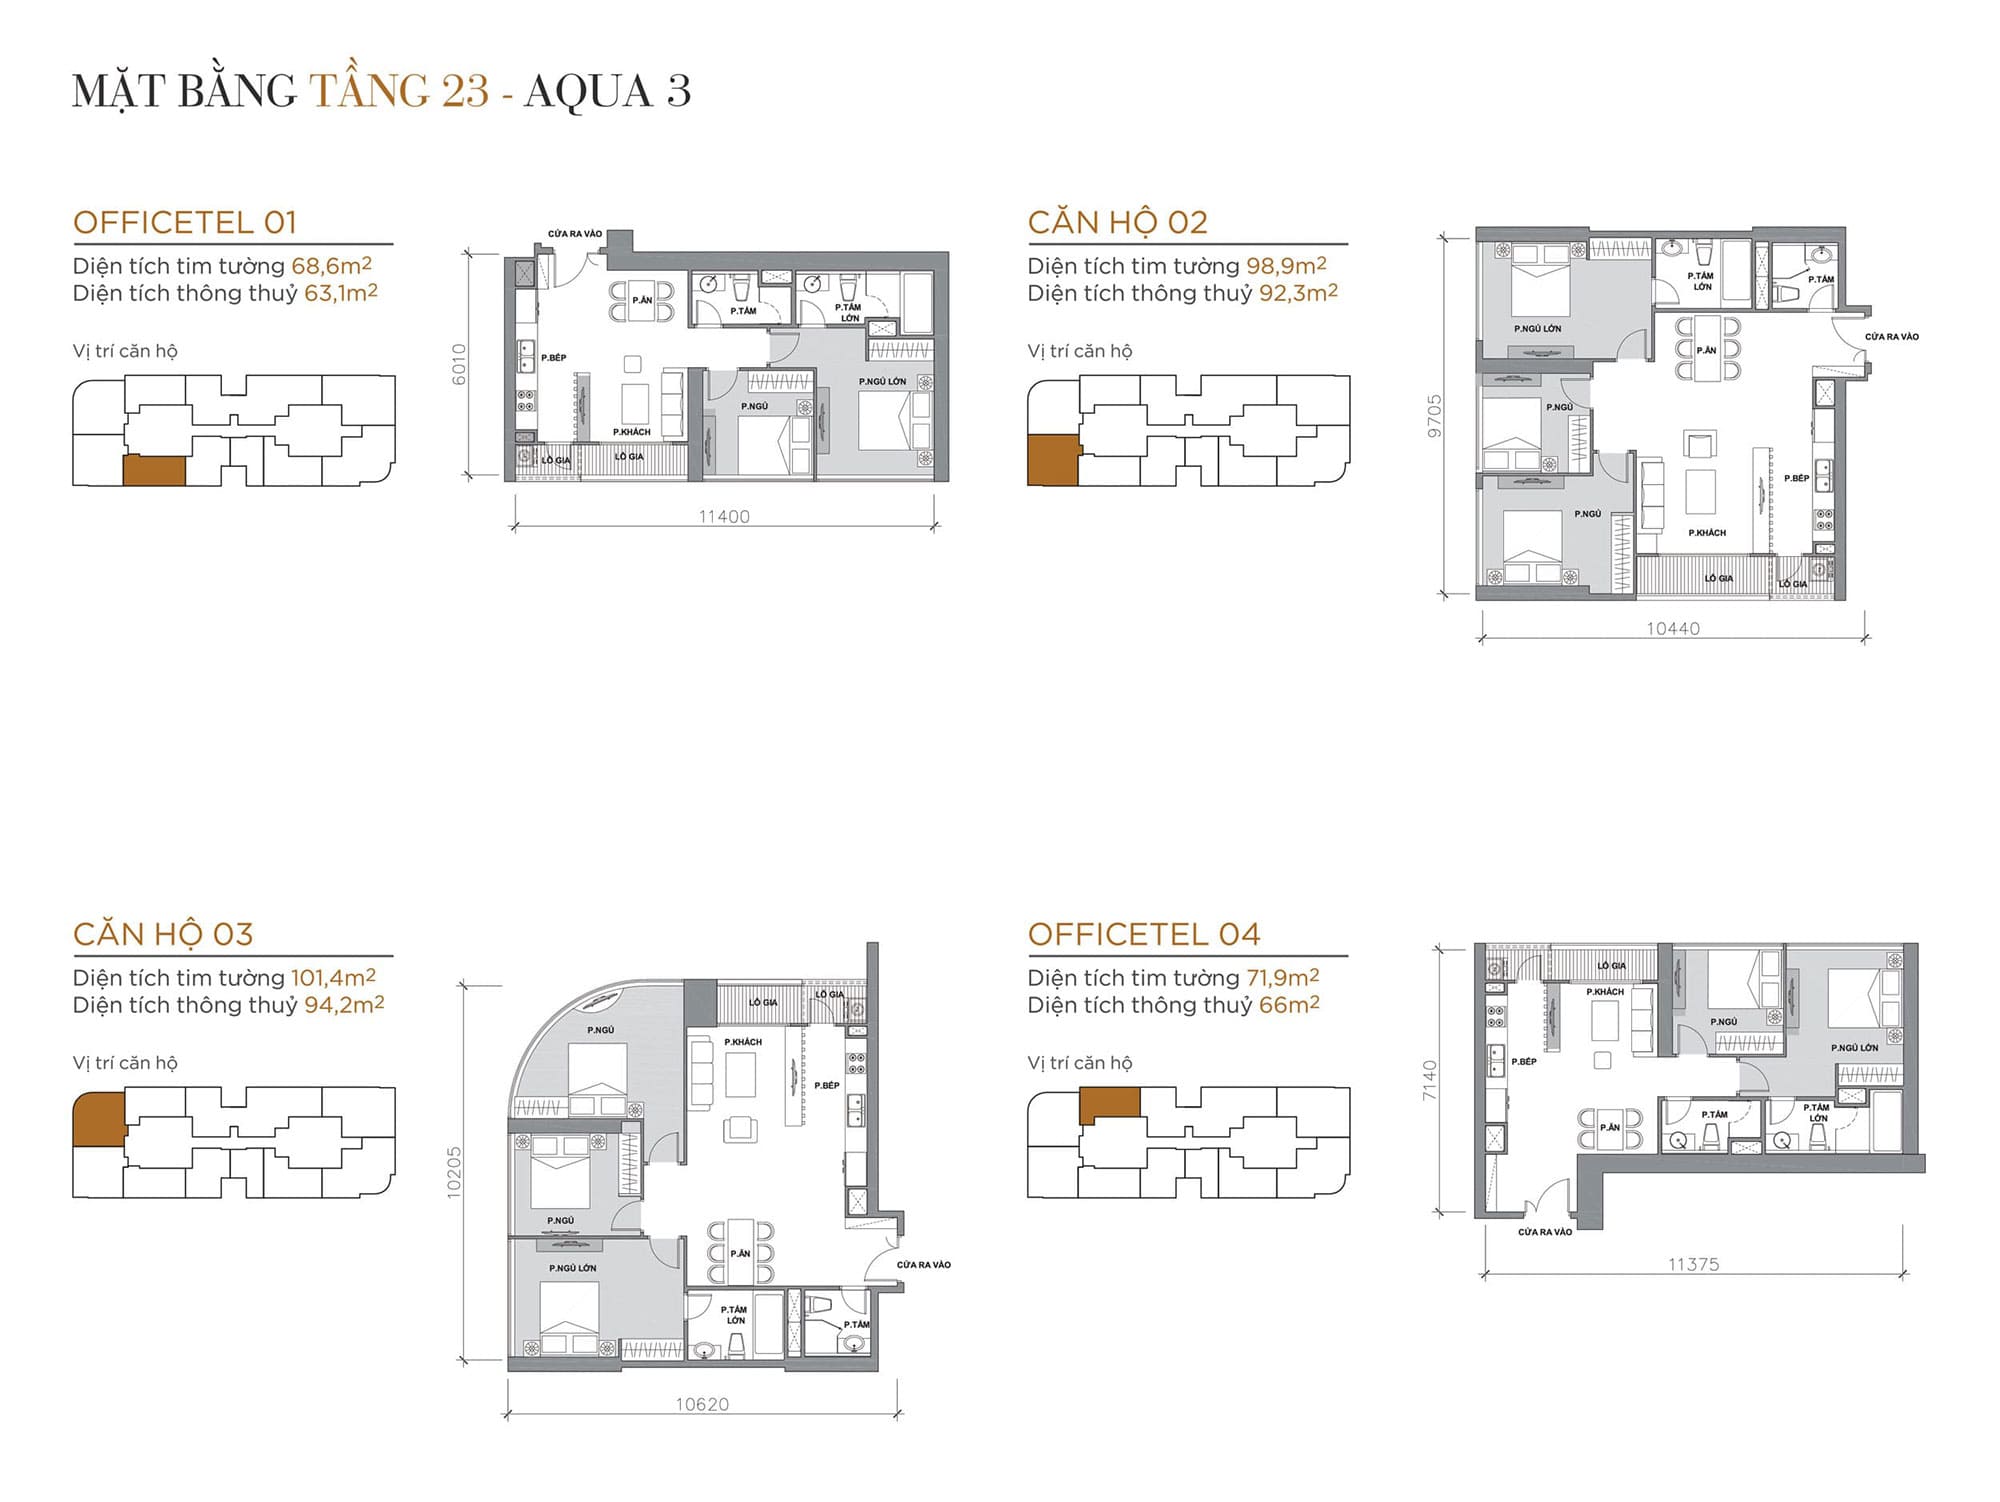 Layout căn hộ tầng 23 tòa Aqua 3 loại Officetel 01, Căn hộ 02, Căn hộ 03, Officetel 04.